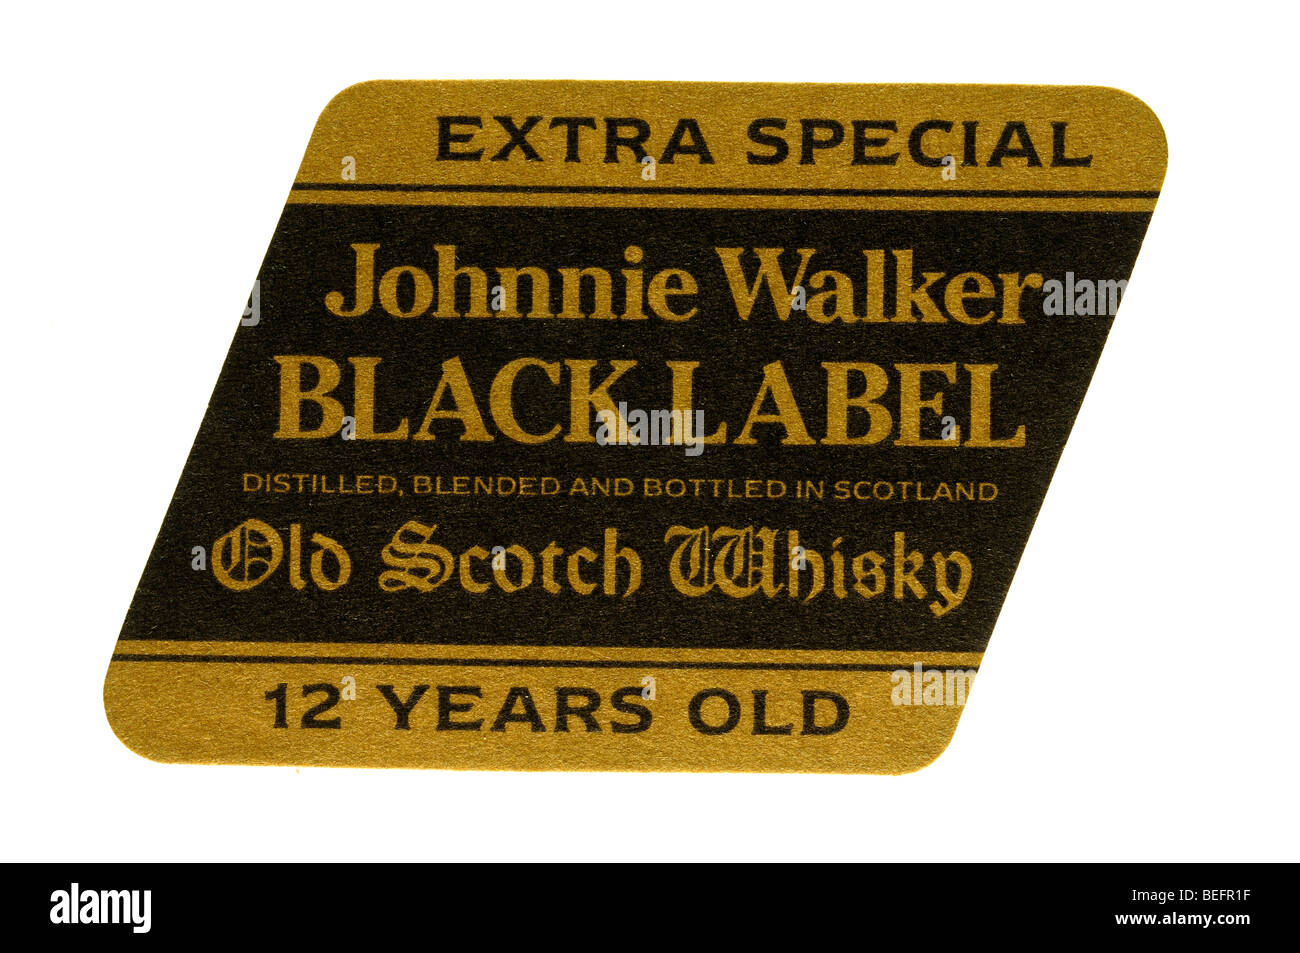 ganz besonderen Johnnie Walker black Label destilliert, gemischt und abgefüllt in Schottland Alter Scotch Whisky 12 Jahre alt Stockfoto